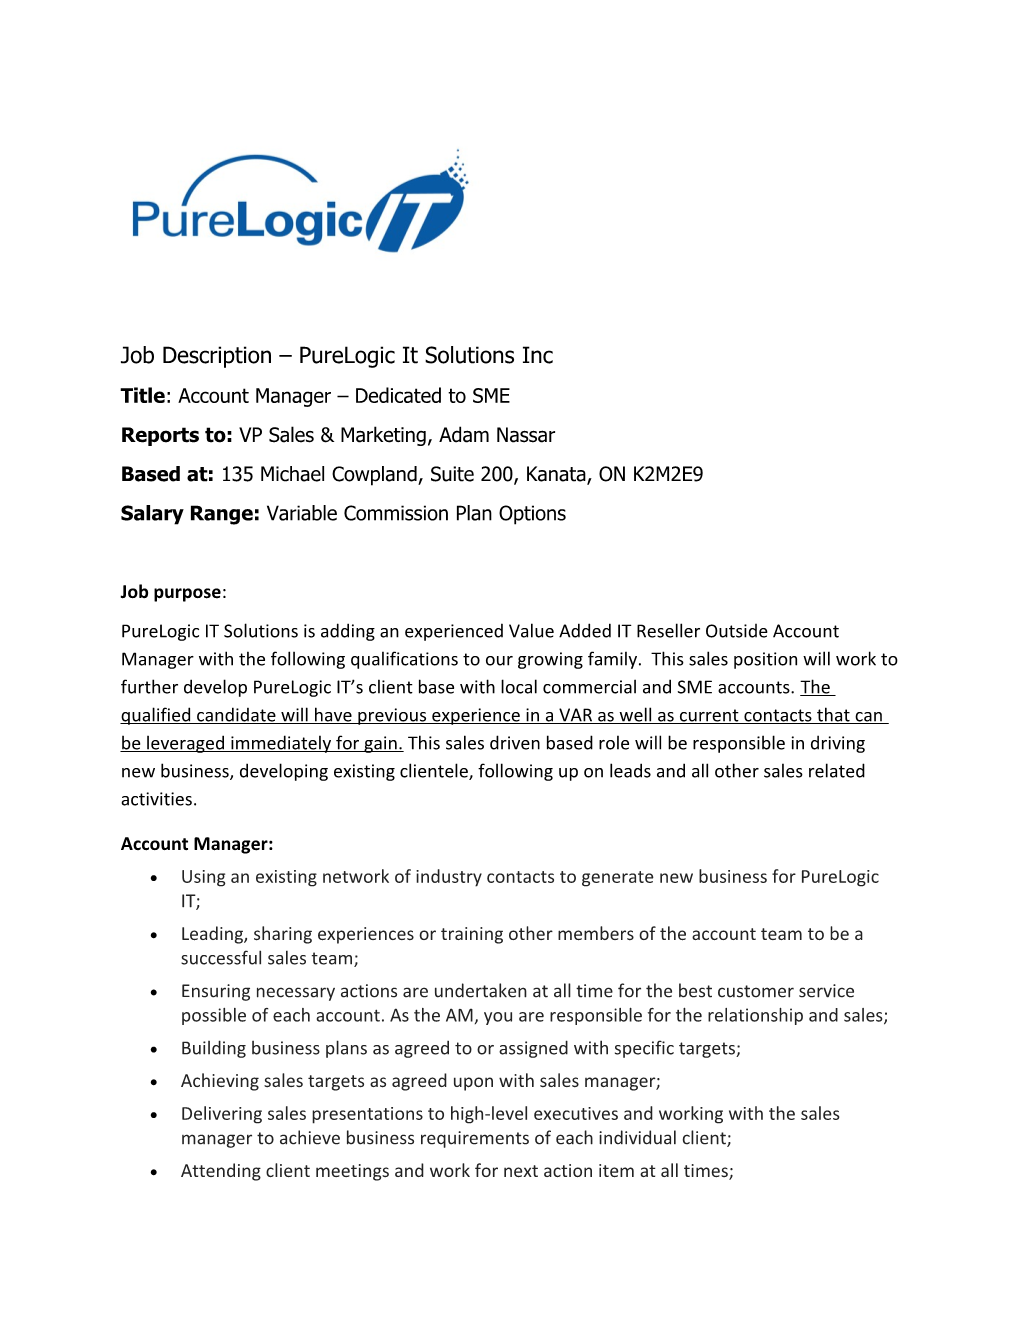 Job Description Purelogic It Solutions Inc